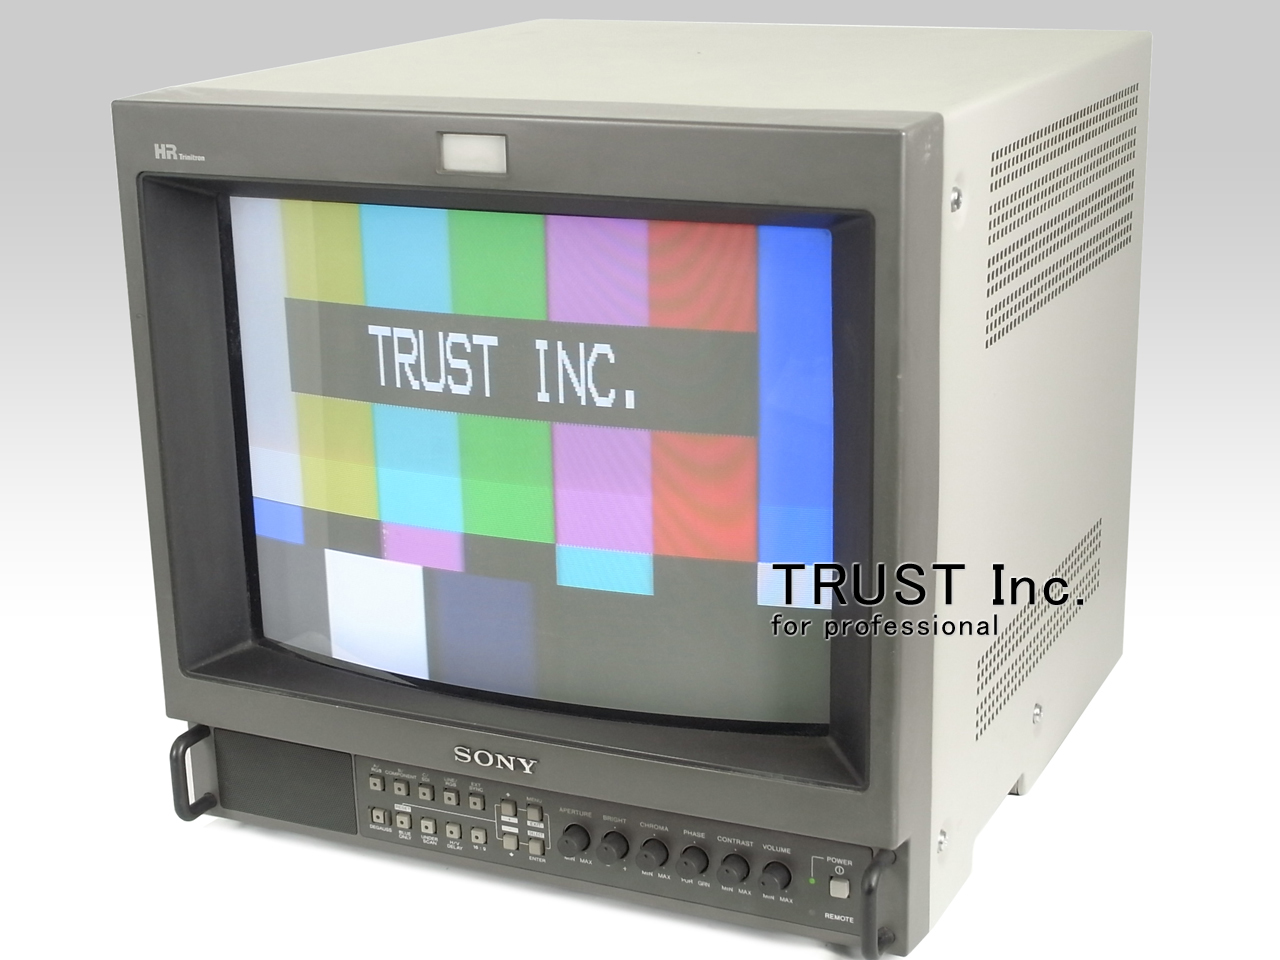 サ/ SONY ソニー PVM-2055MD トリニトロンカラービデオモニター 解像度 